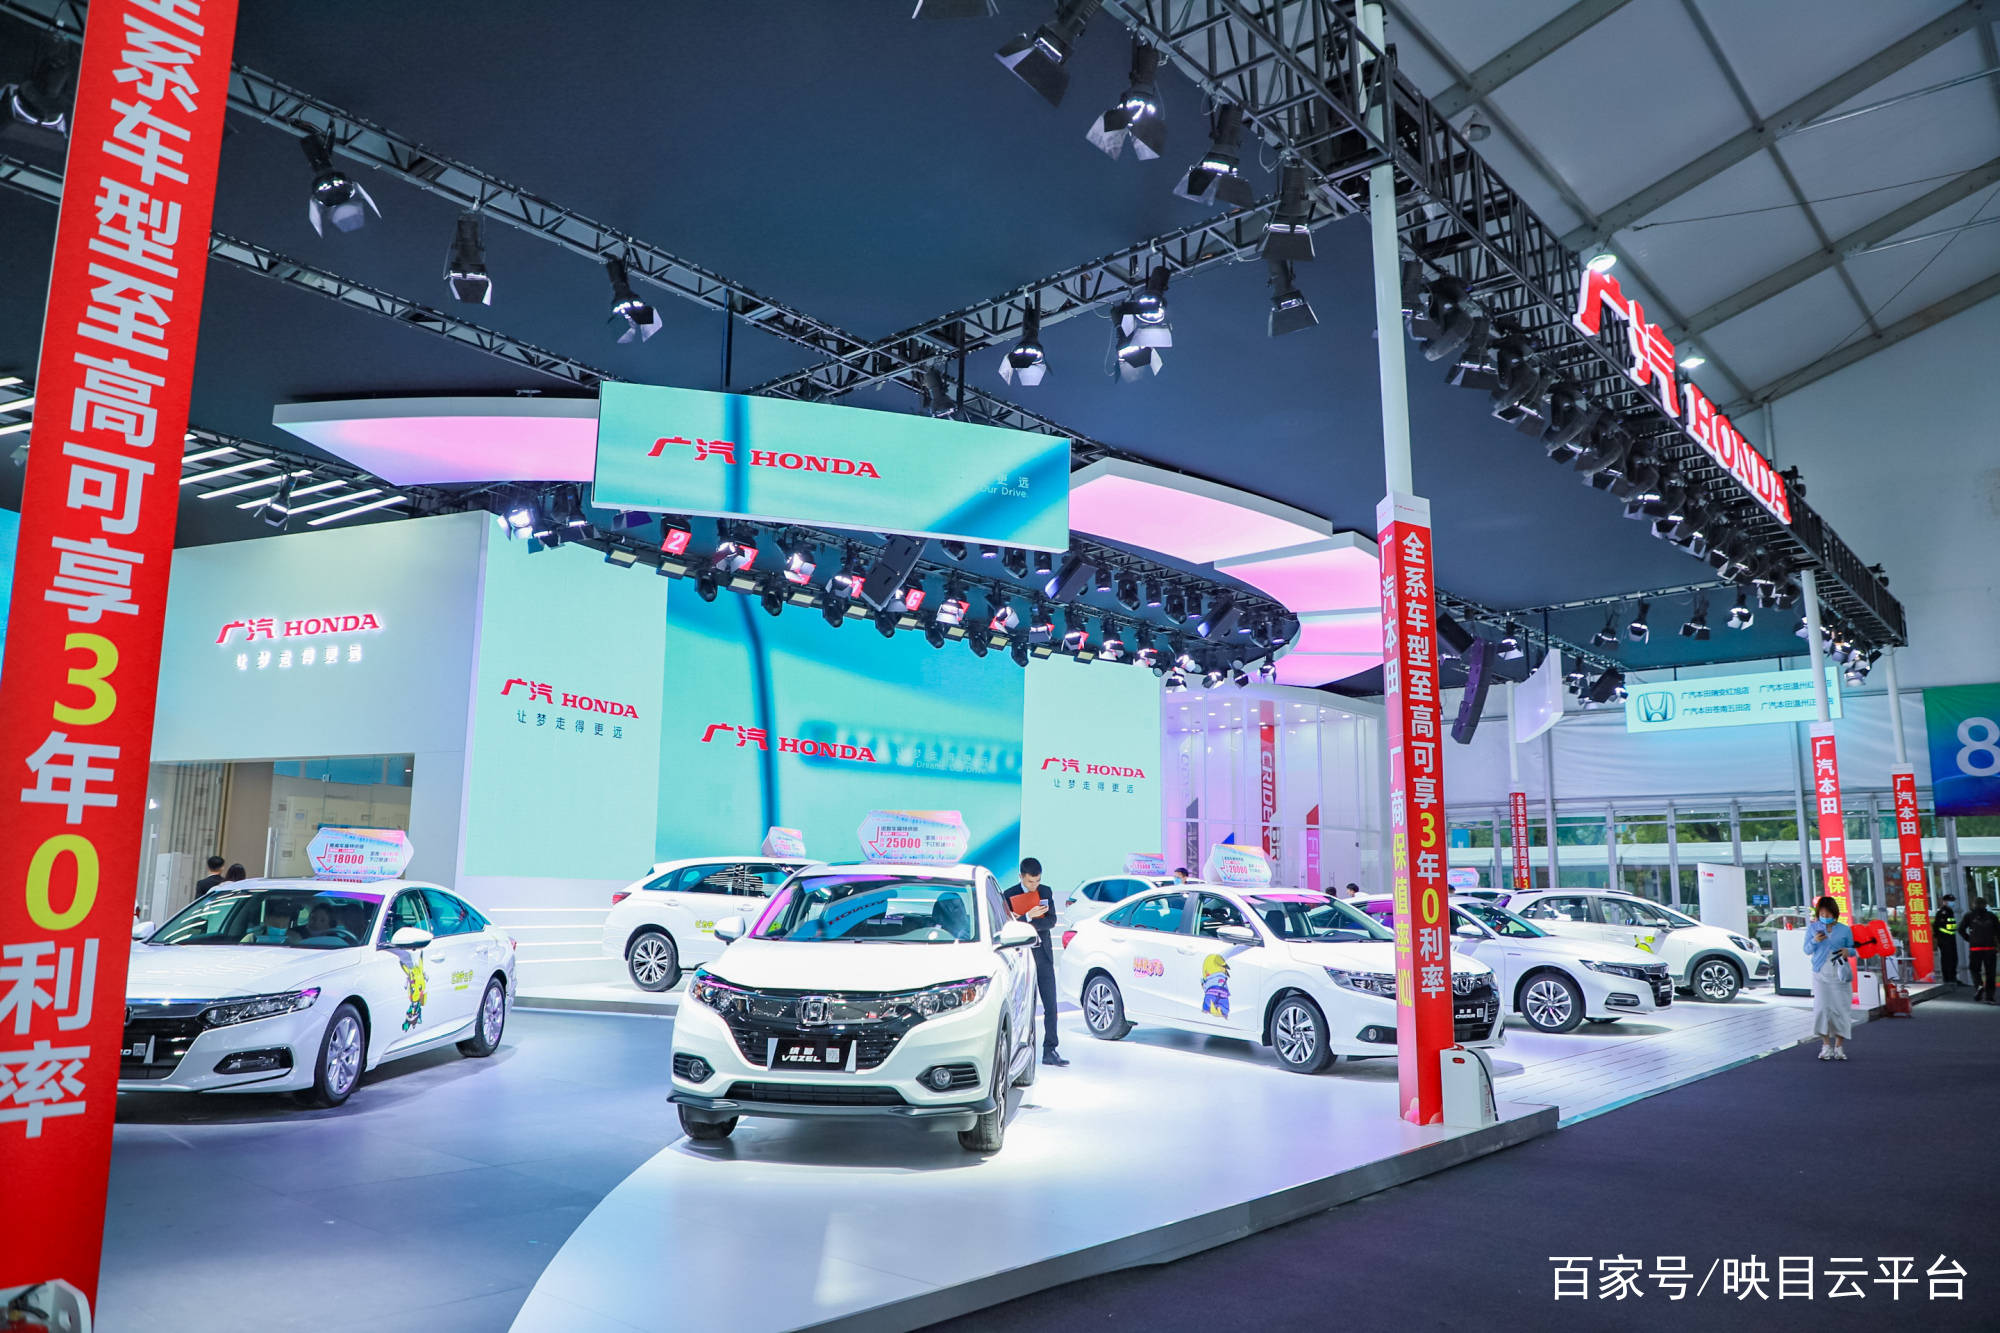 温州国家会展中心主办方:广汽本田活动名称:2021第十九届温州国际汽车